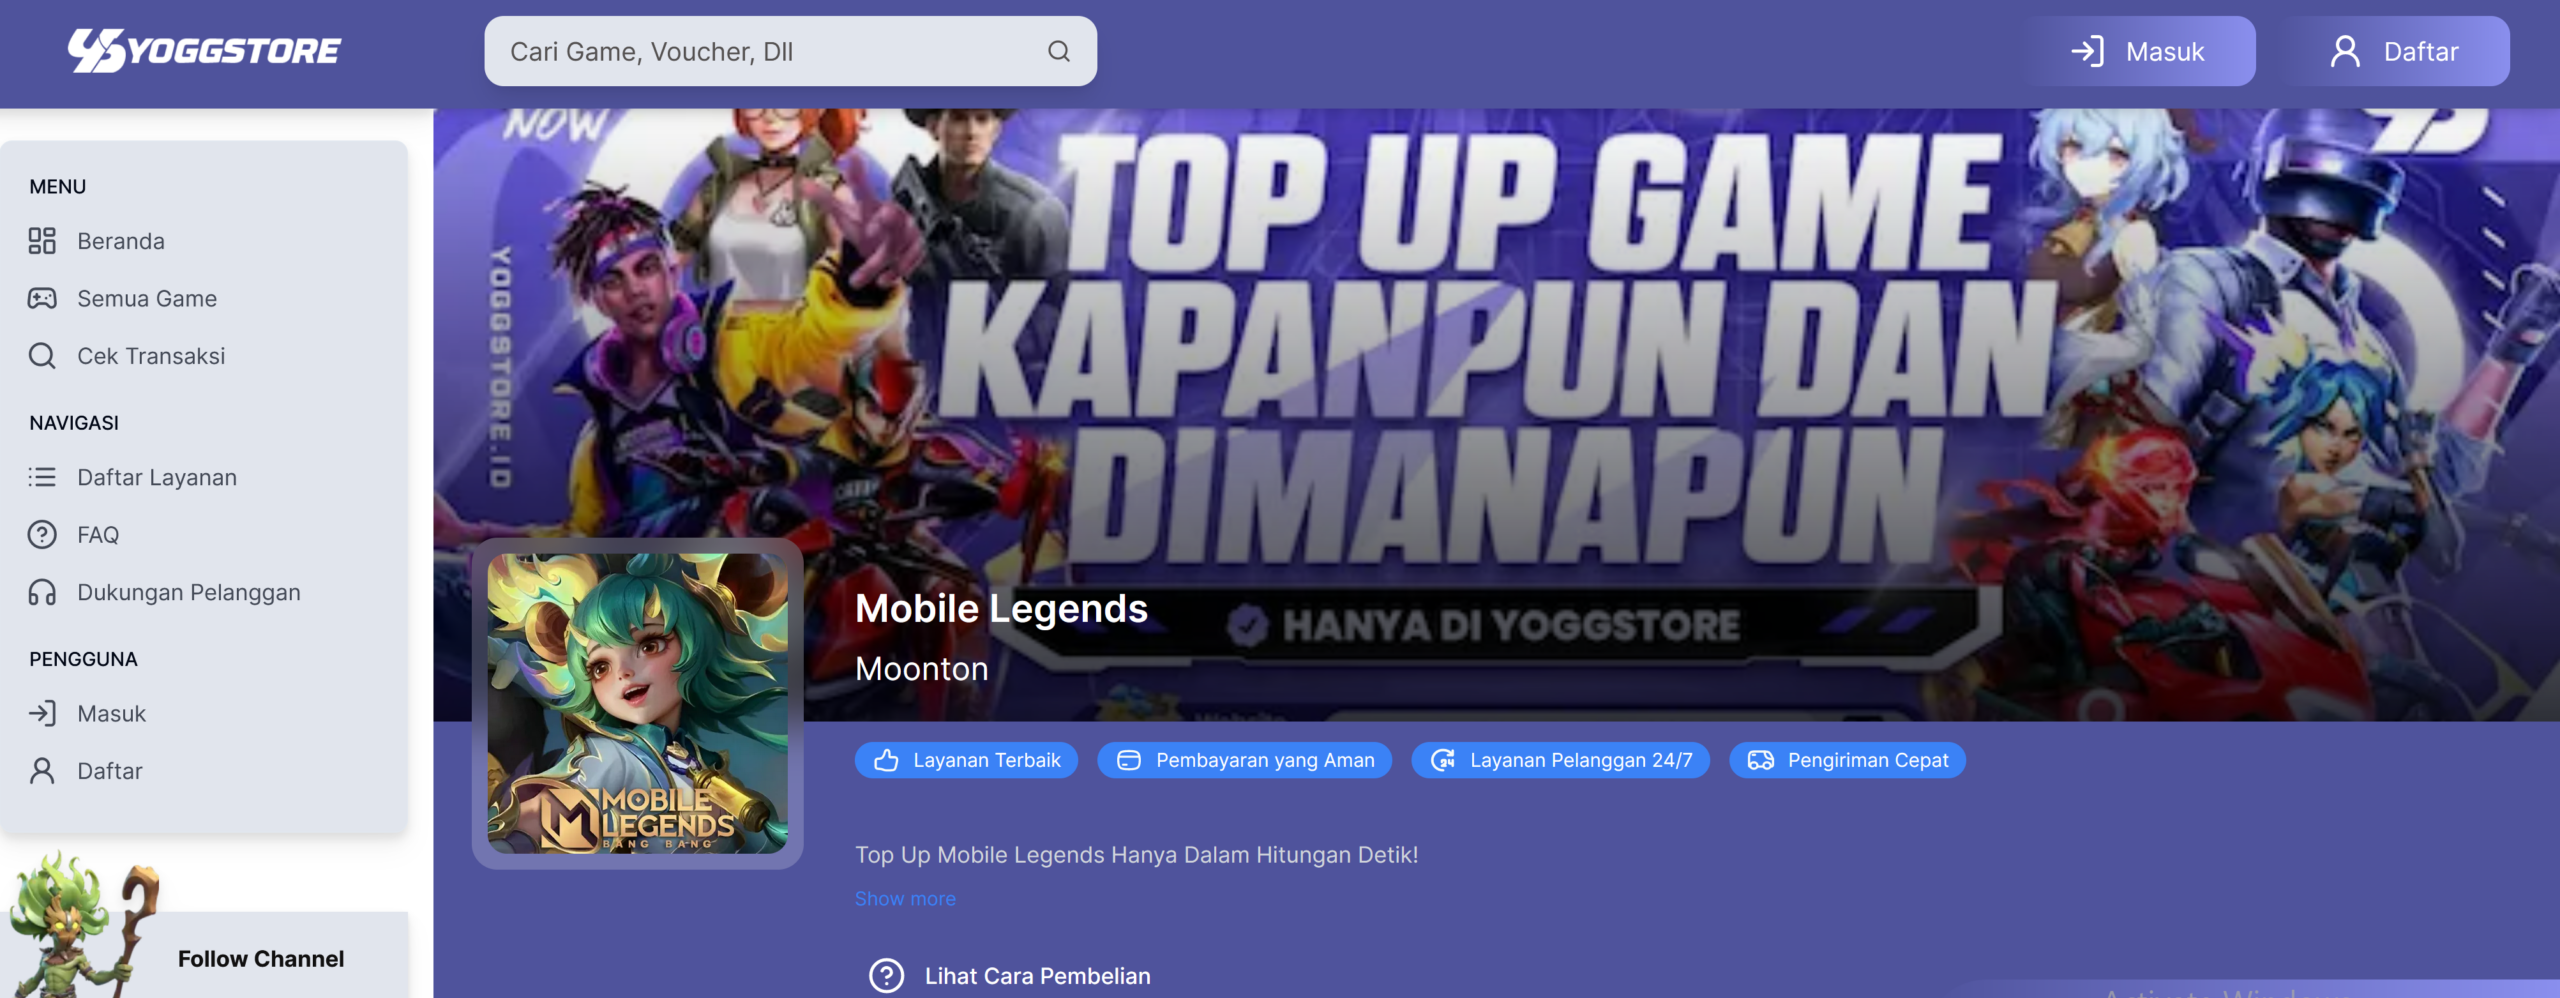 Top Up Diamond Mobile Legends yang Murah dan Terpercaya di Yoggstore.id